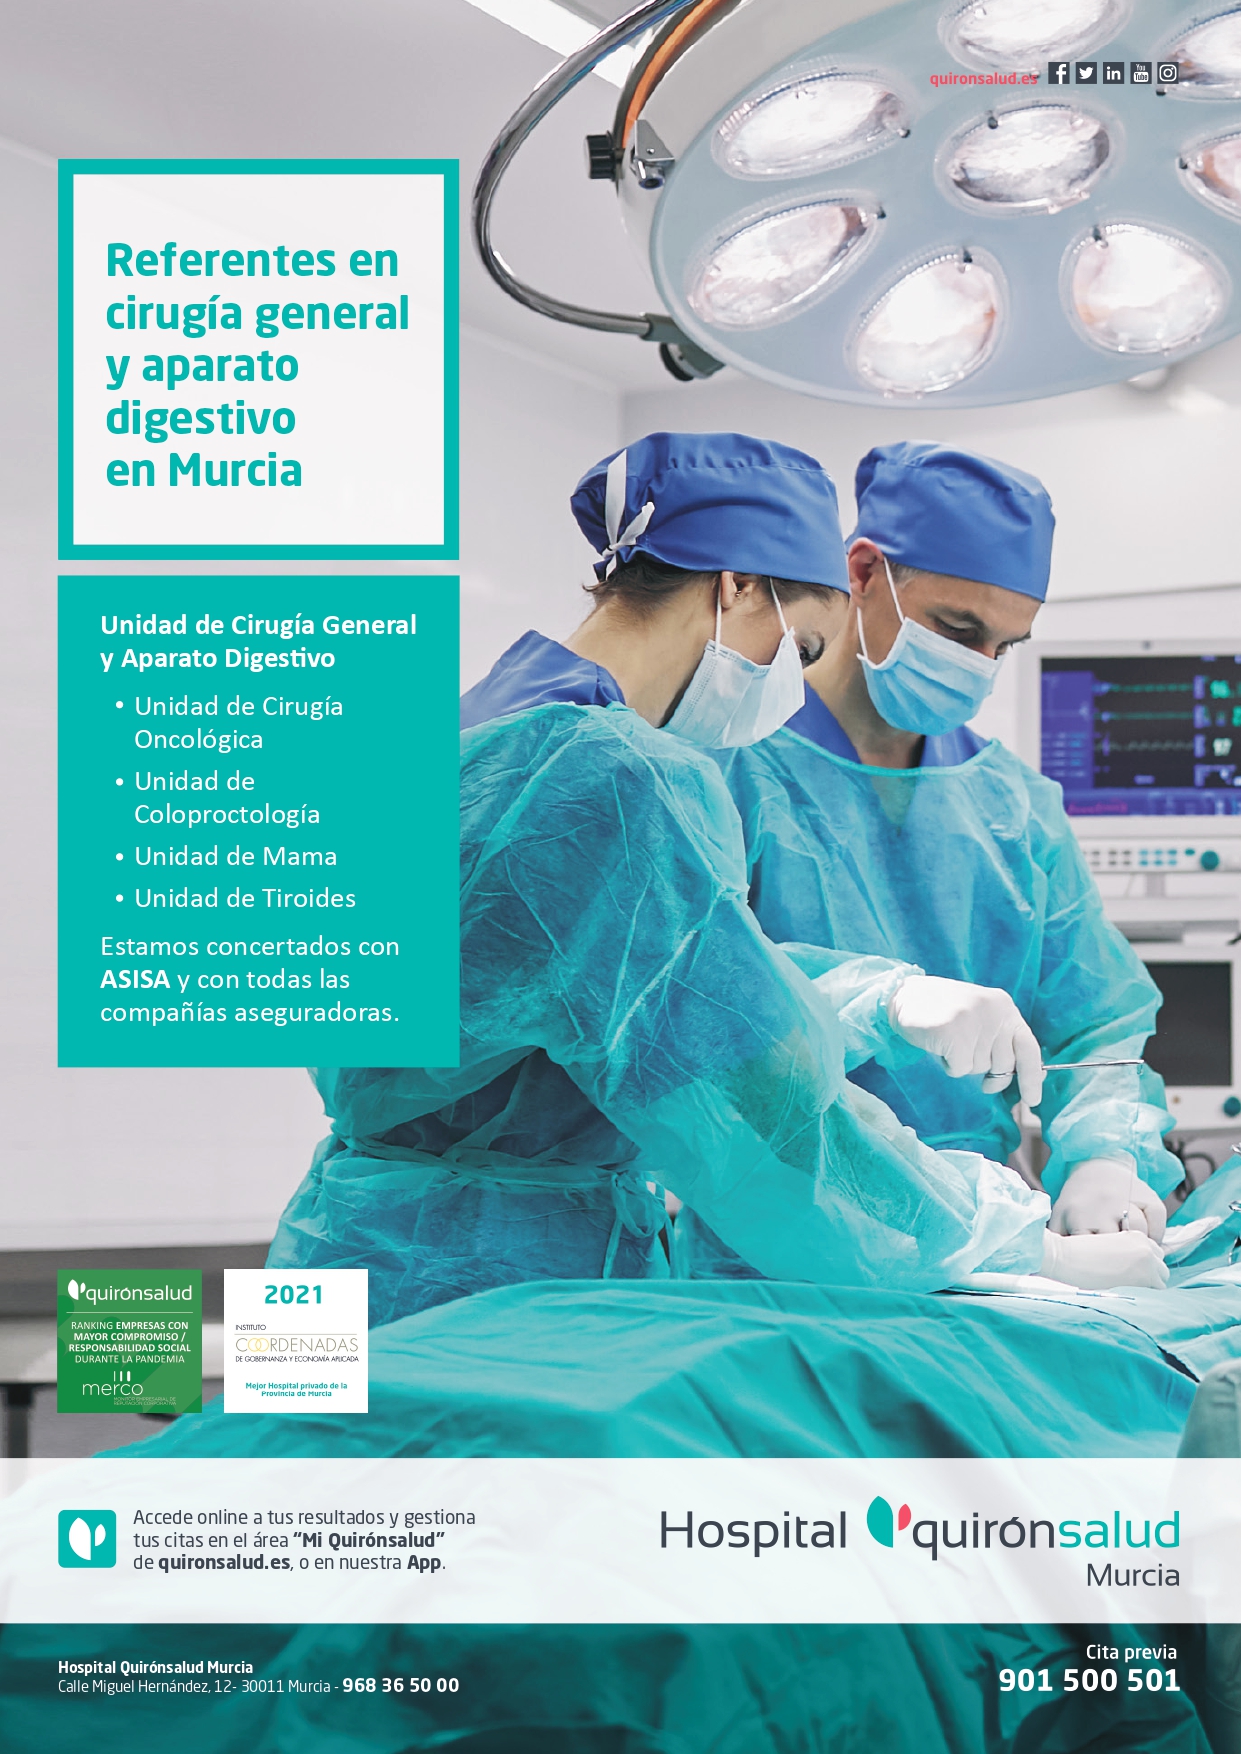 Cirugía General y Digestiva Murcia Quironsalud